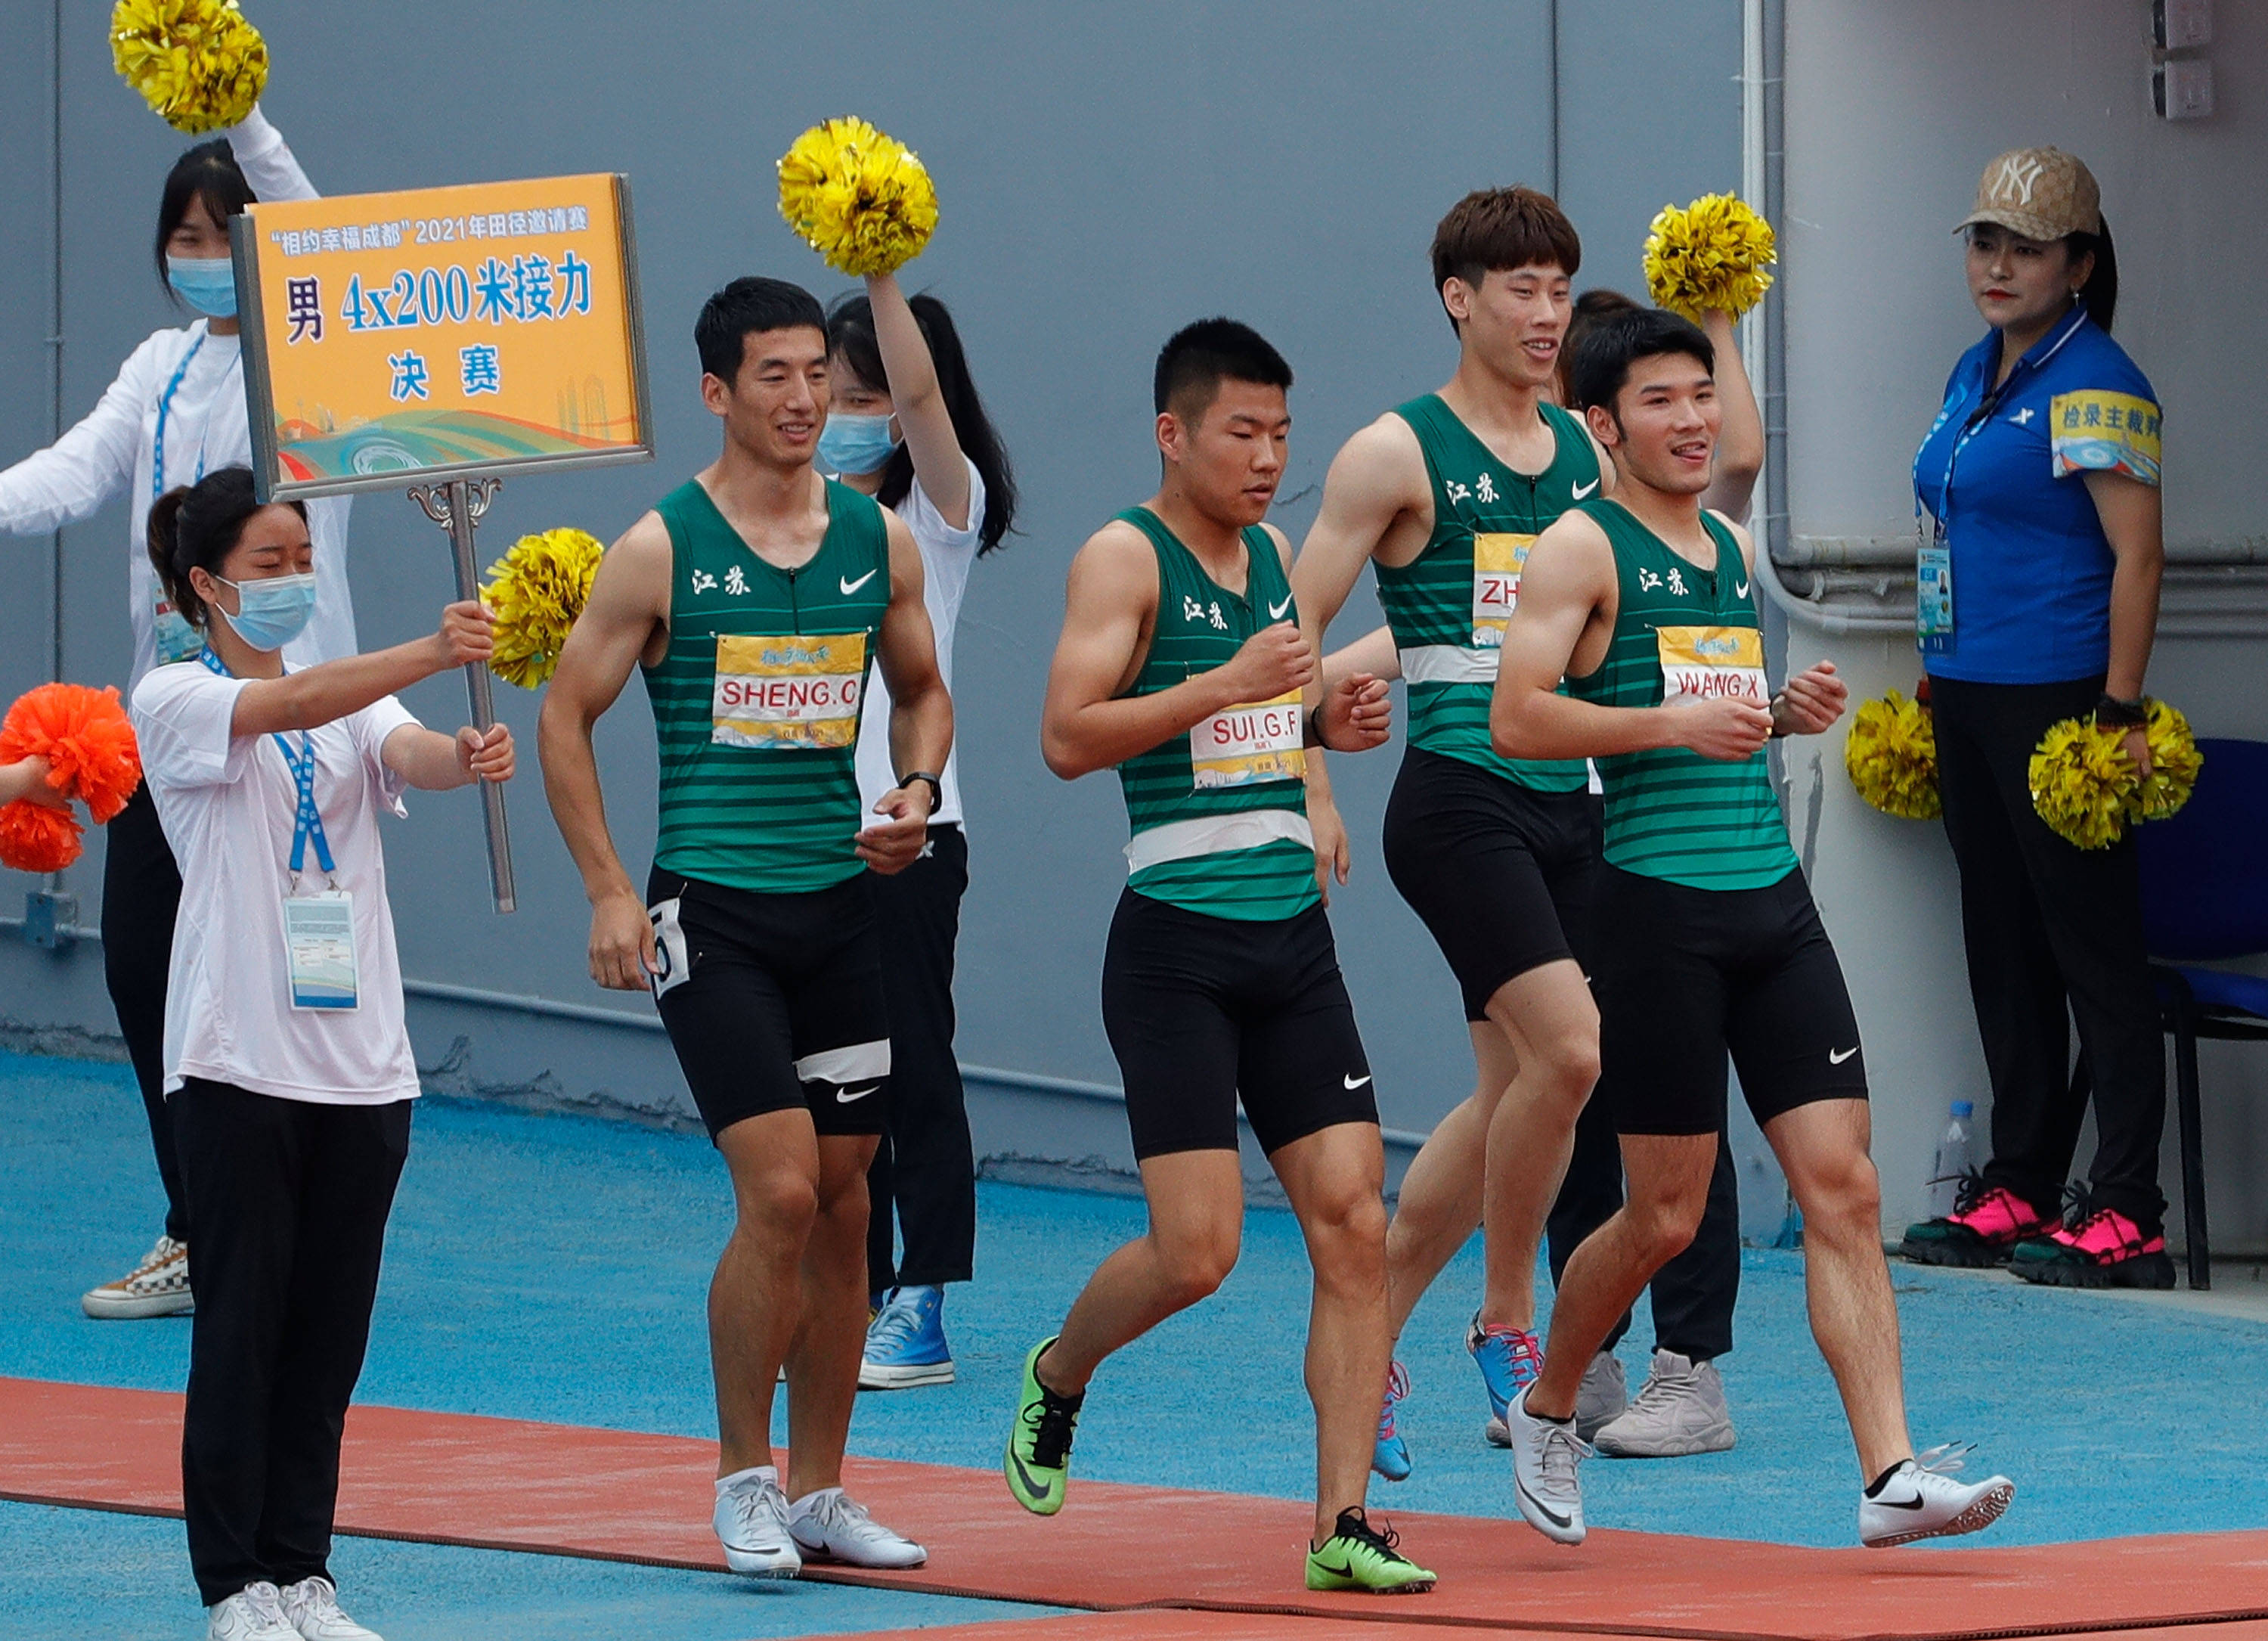 5月16日,江苏铁人队选手盛超,隋高飞,张赛,王鑫(从左至右)在男子4x200